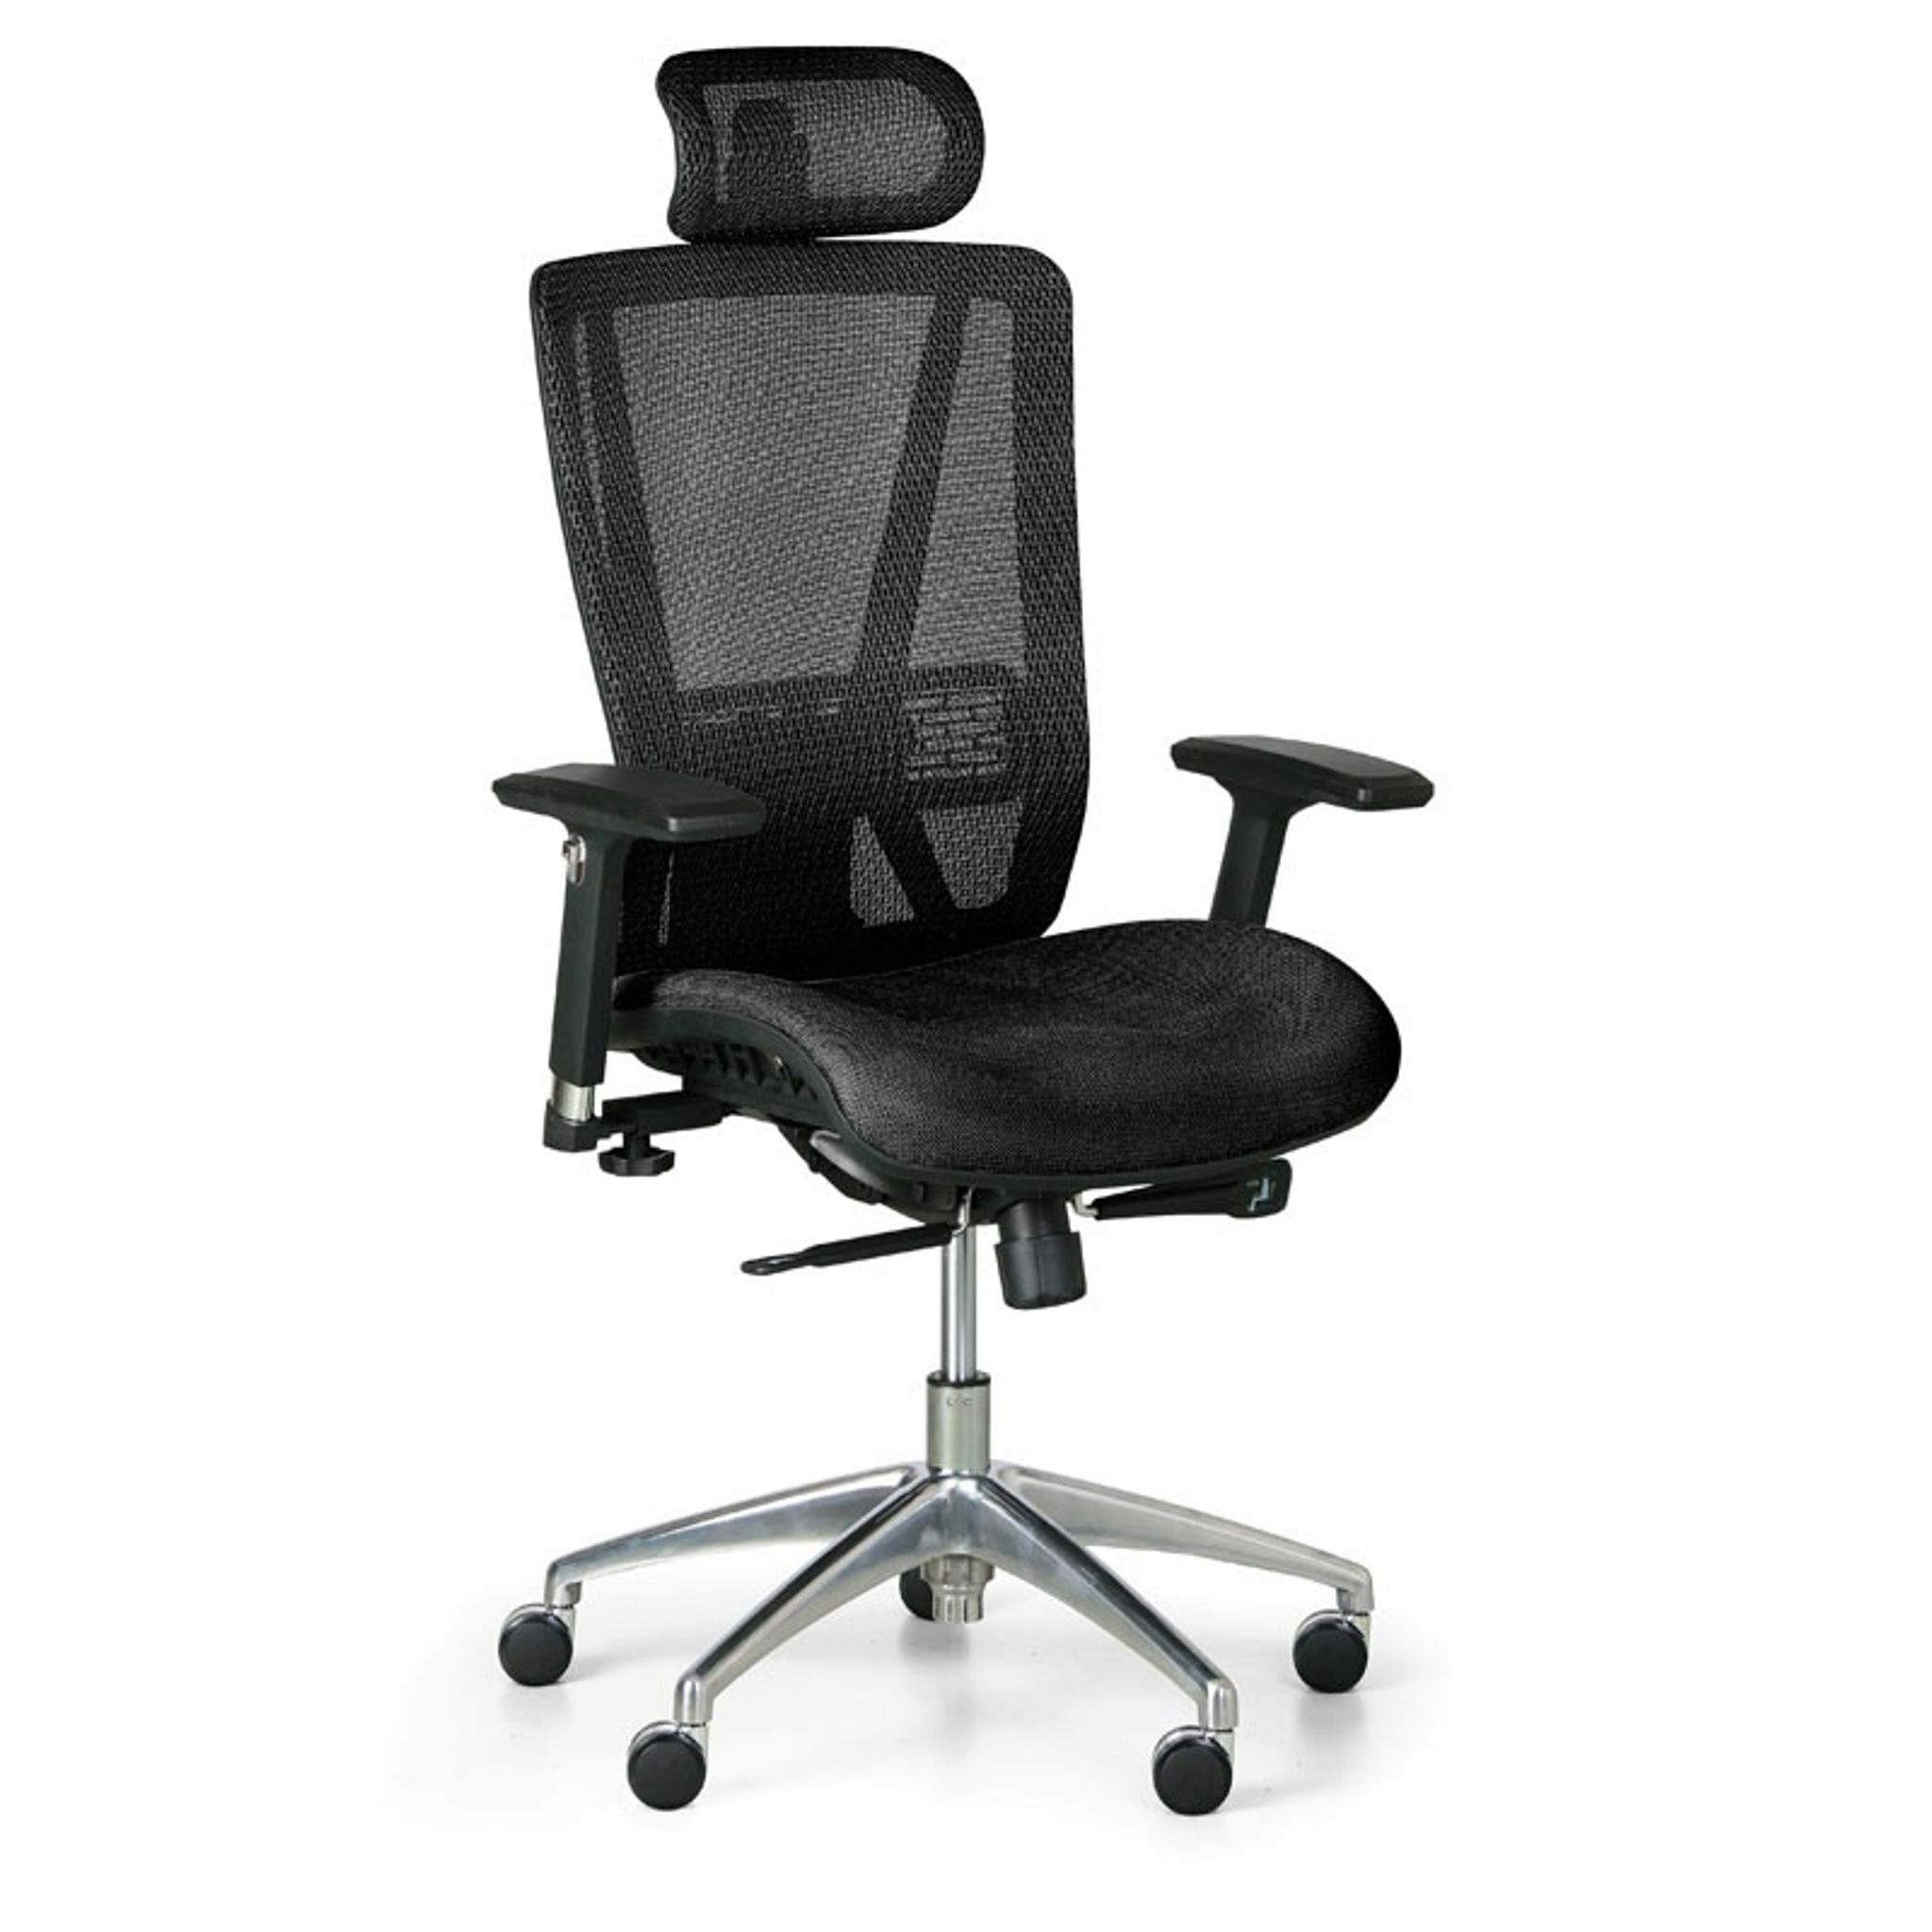 Kancelářská židle LESTER MF, černá